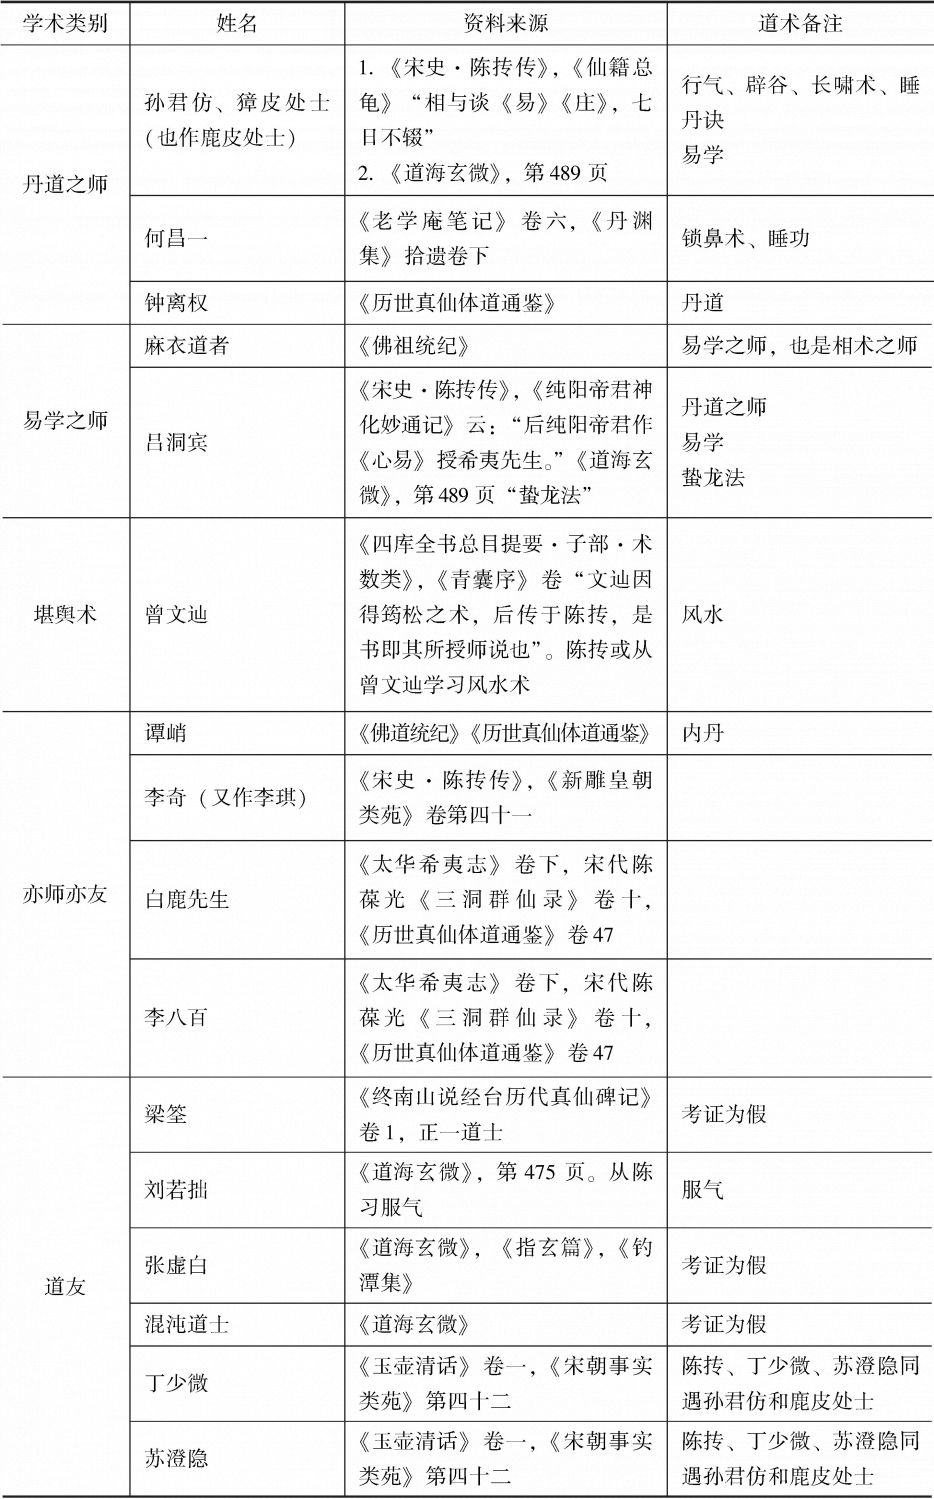 表1-1 陈抟的师友列表（考证见下文）